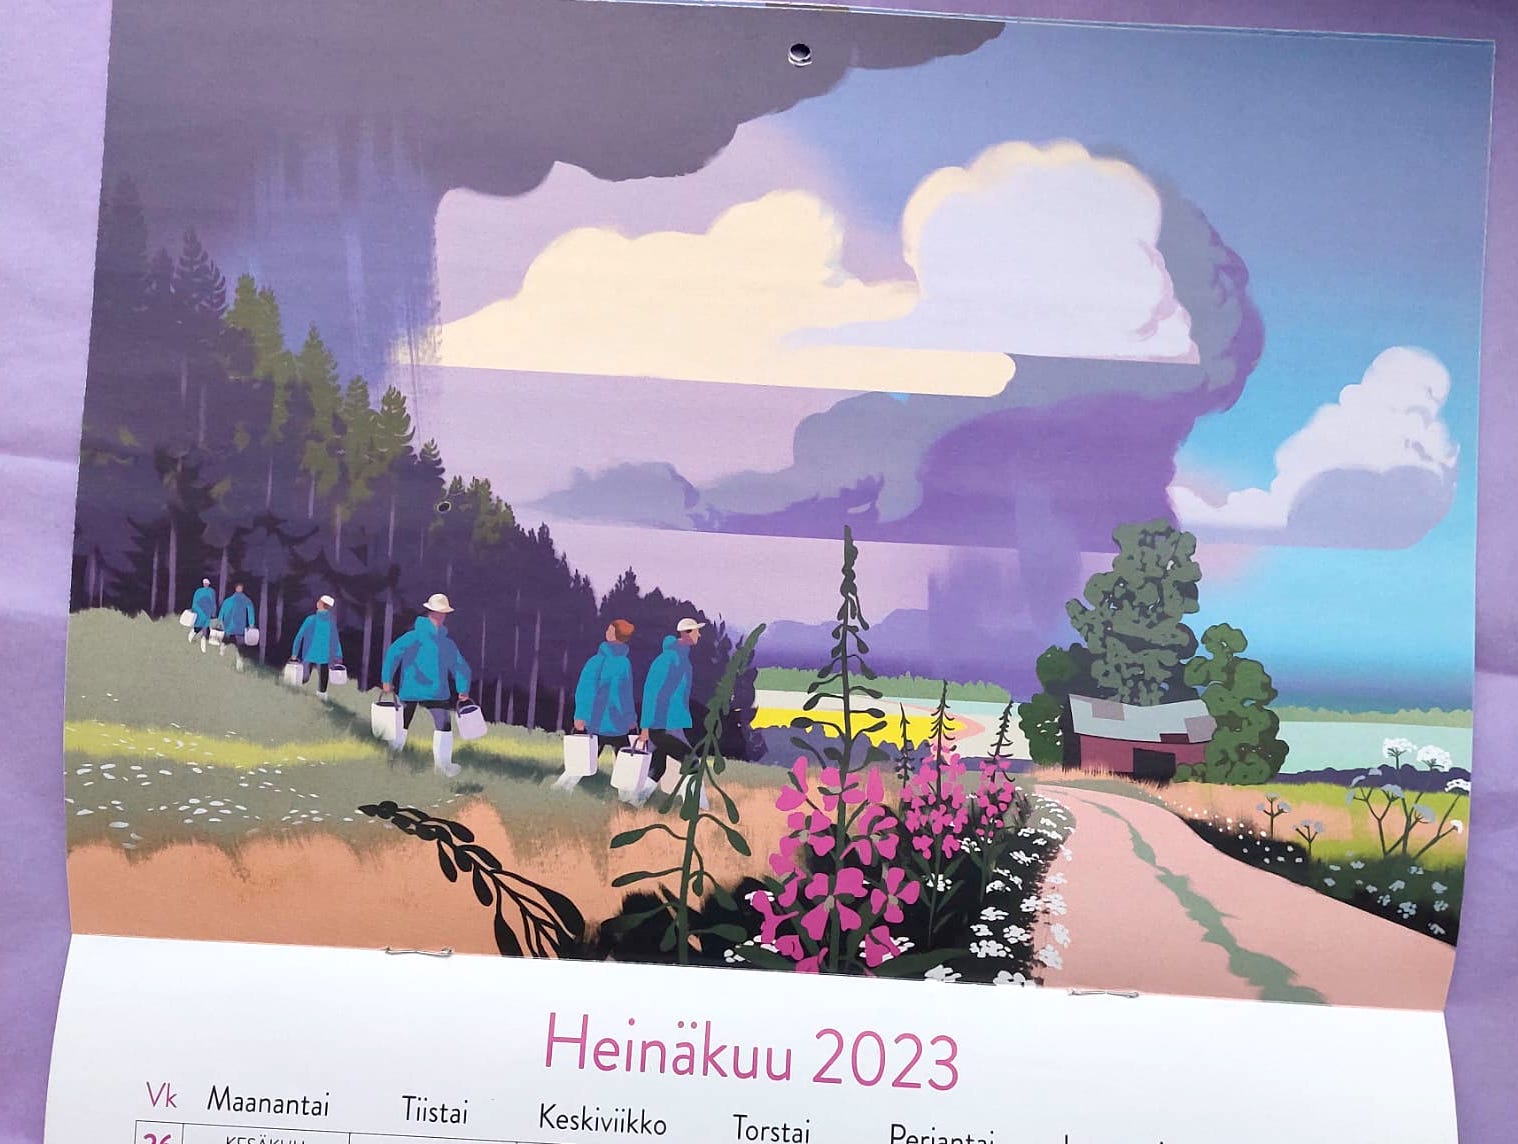 Suomen Latu 2023 kalenteri - Ulkoiluaktiviteetit kuvitettuna - Napa Agency